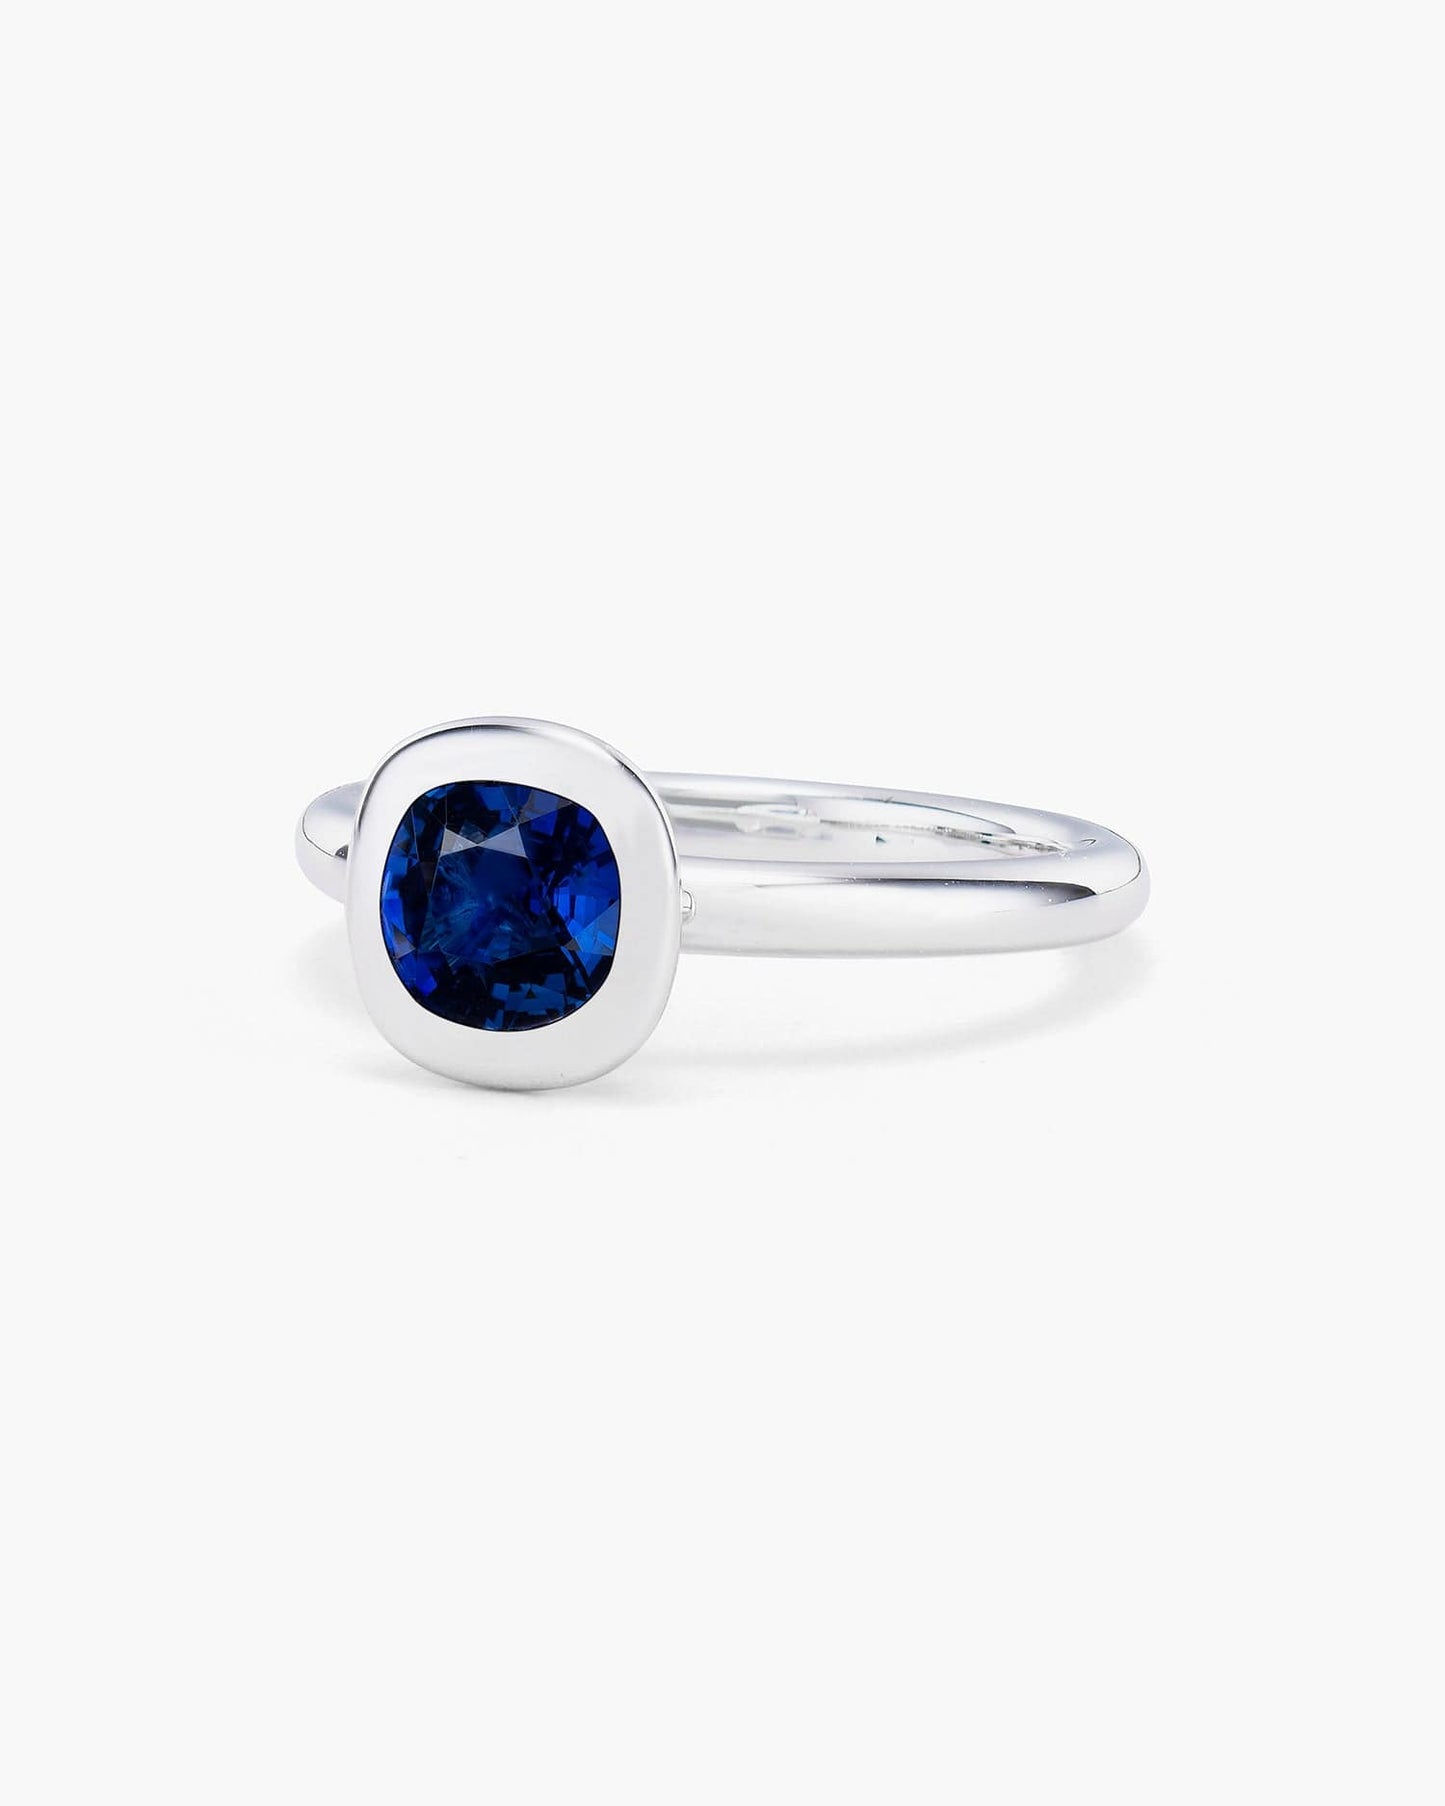 1.05 carat Cushion Cut Sapphire Ring